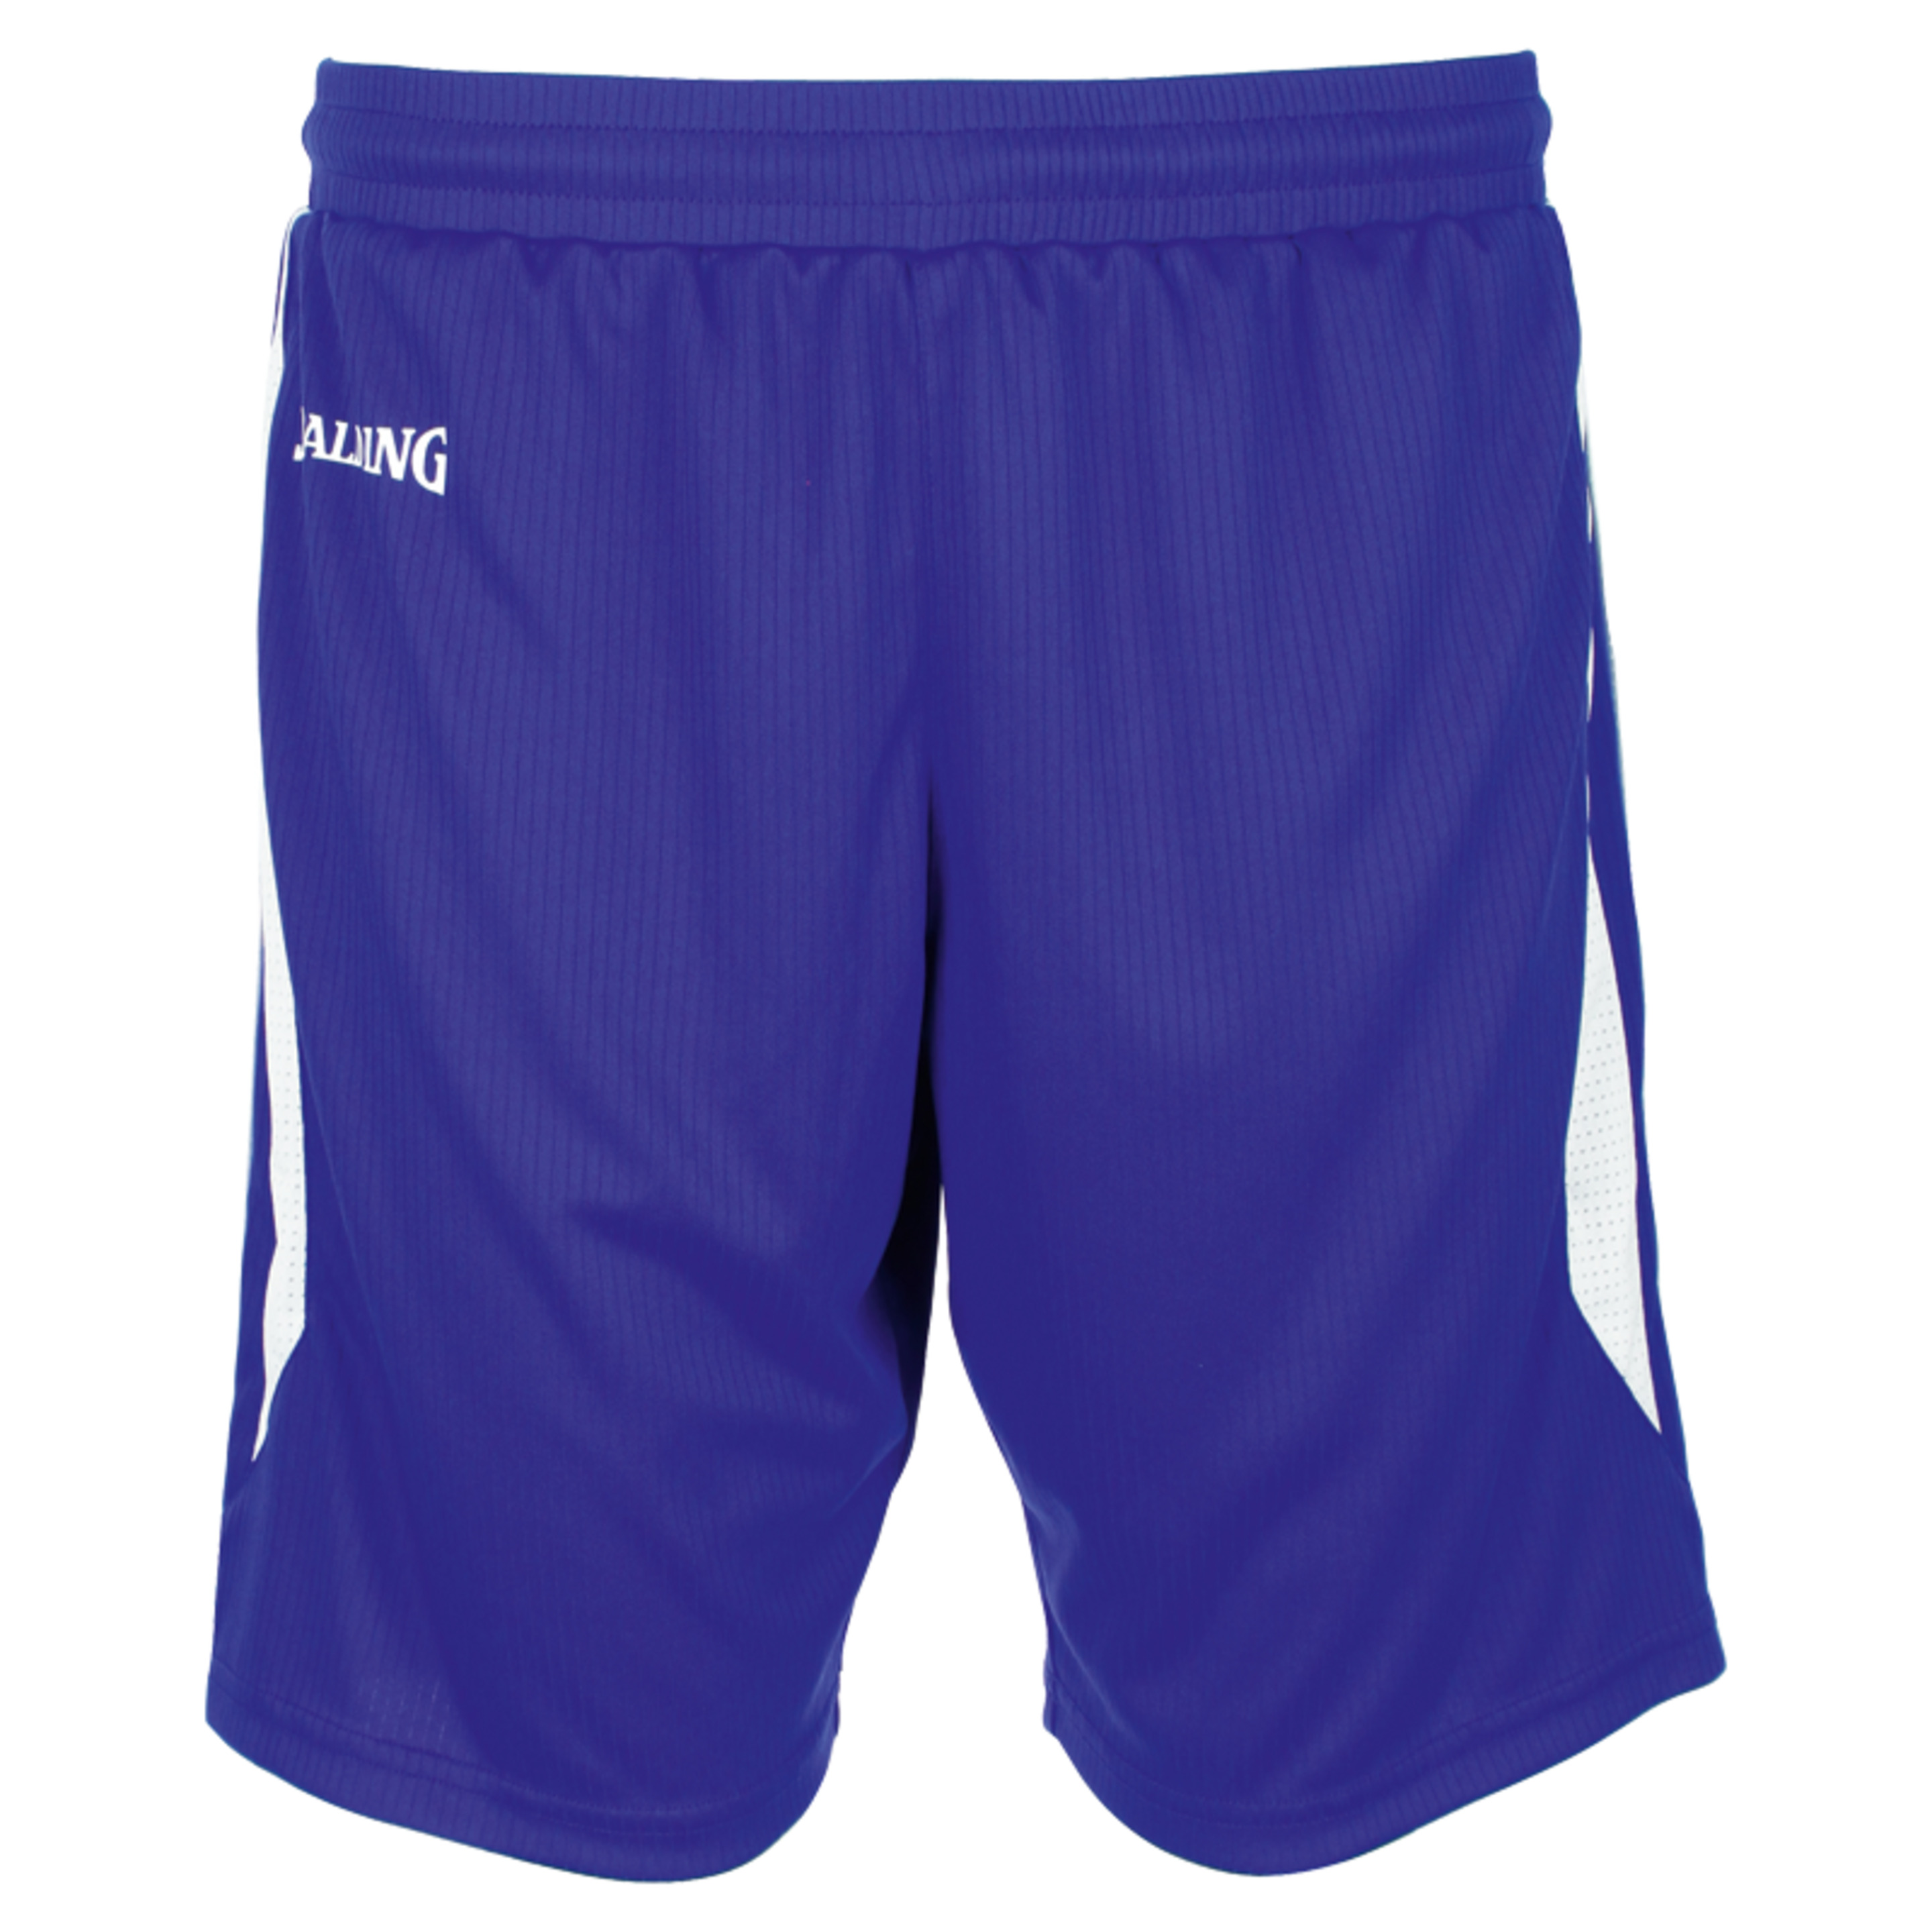 4her Iii Shorts Azul Royal/blanco Spalding - azul - 